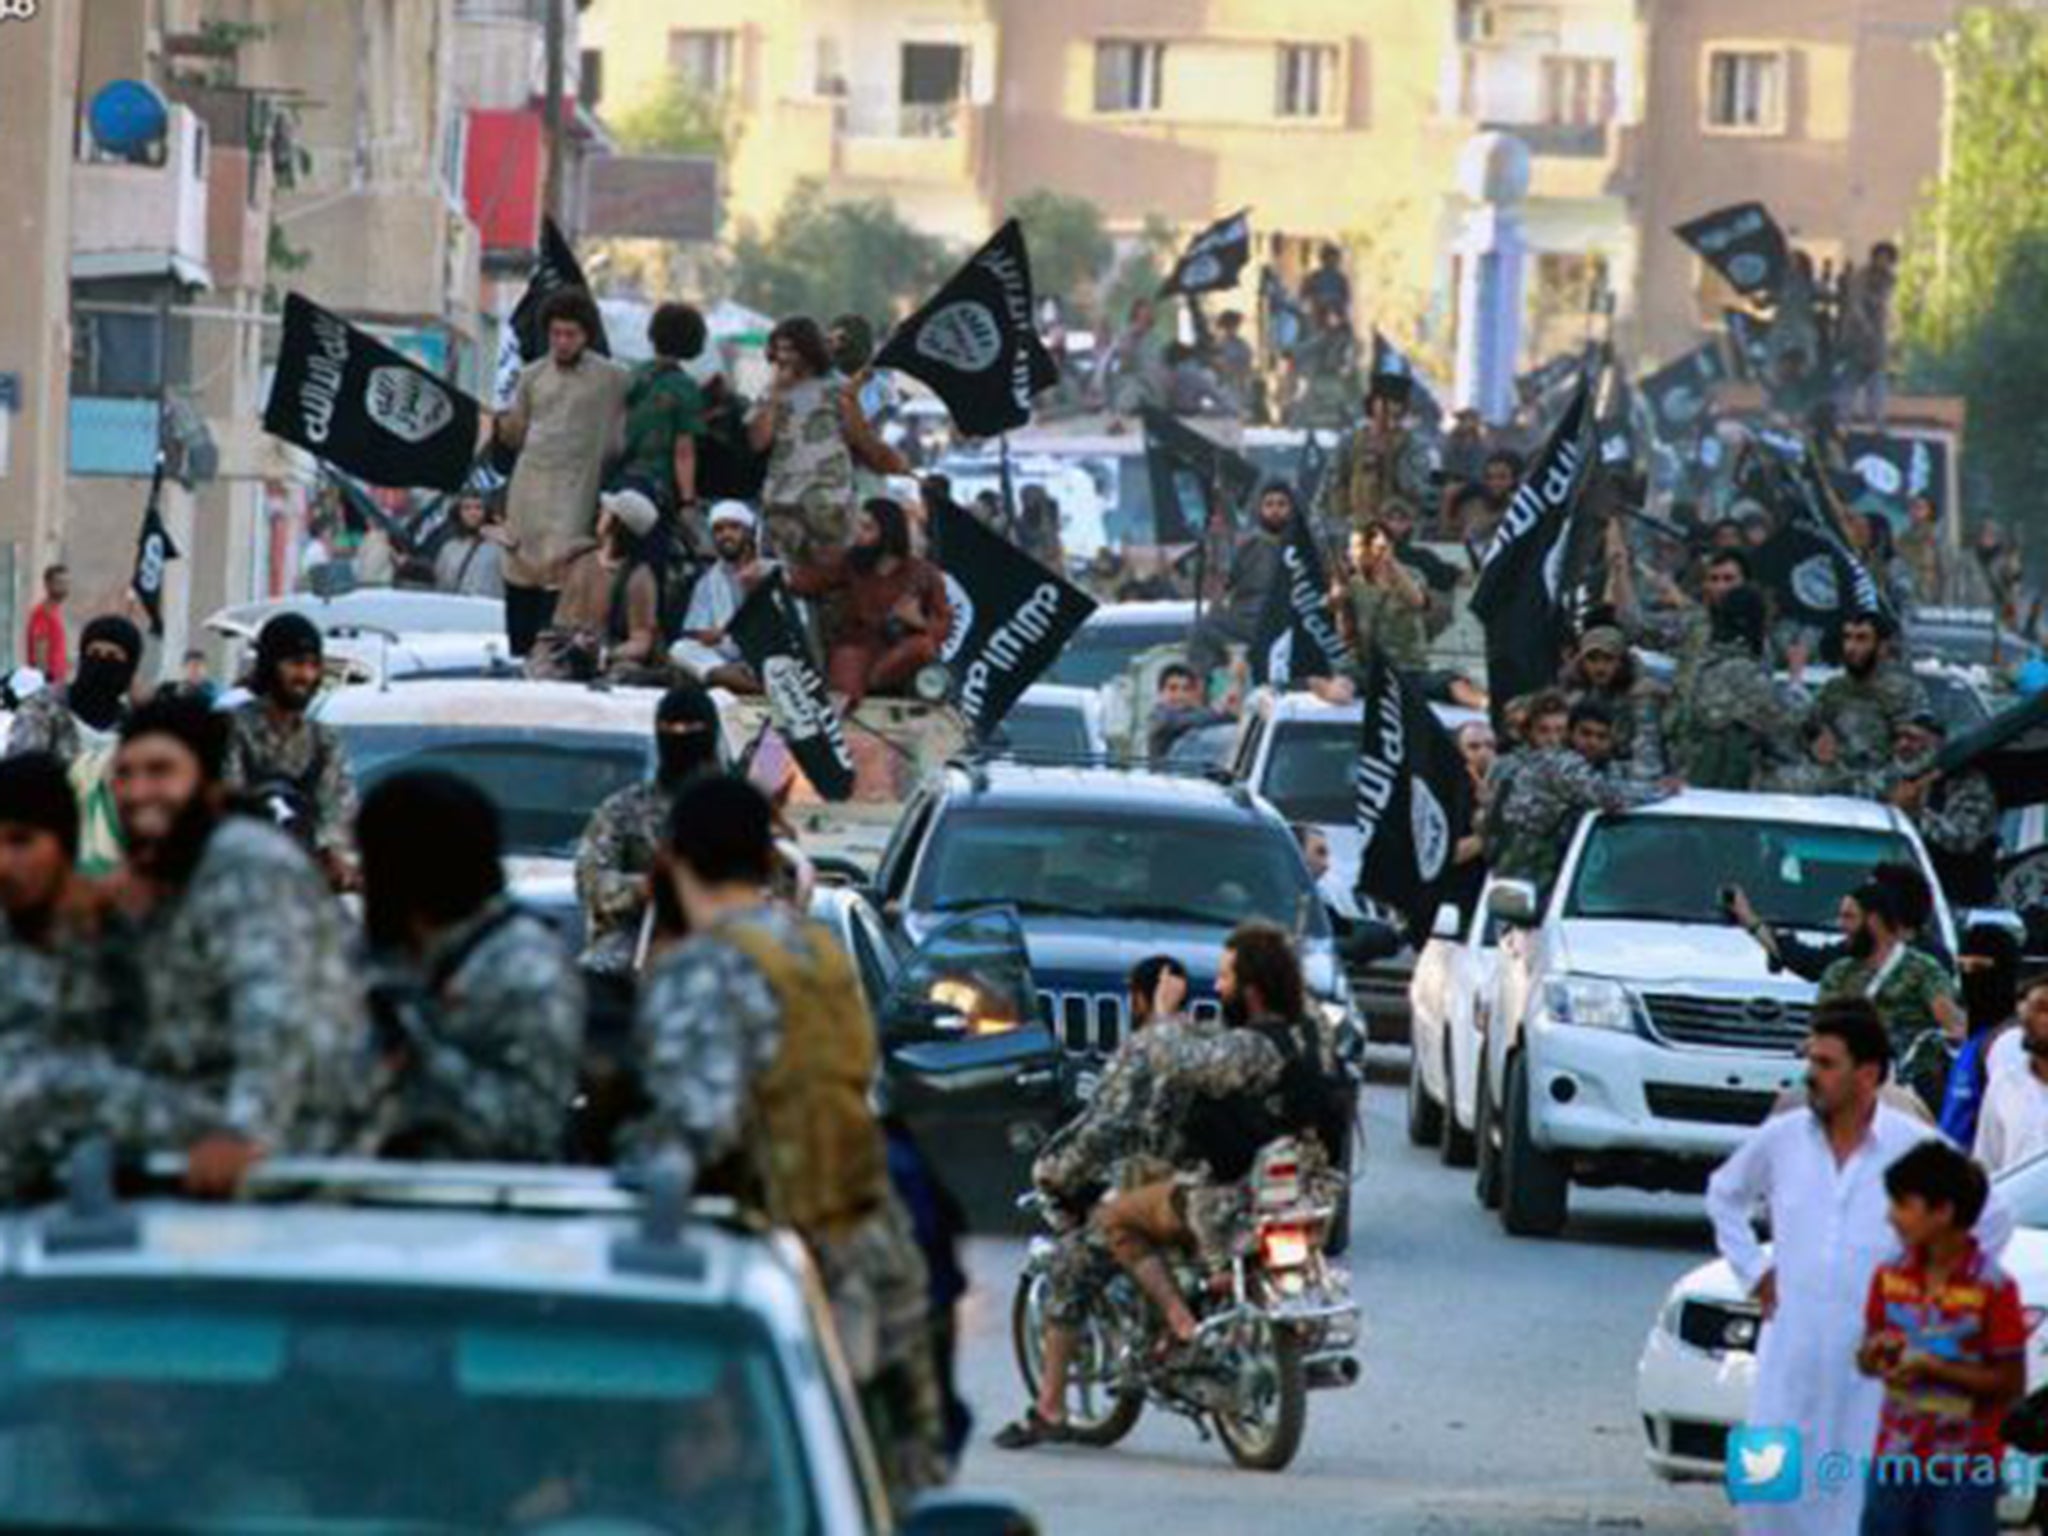 Islamic State fighters in Raqqa